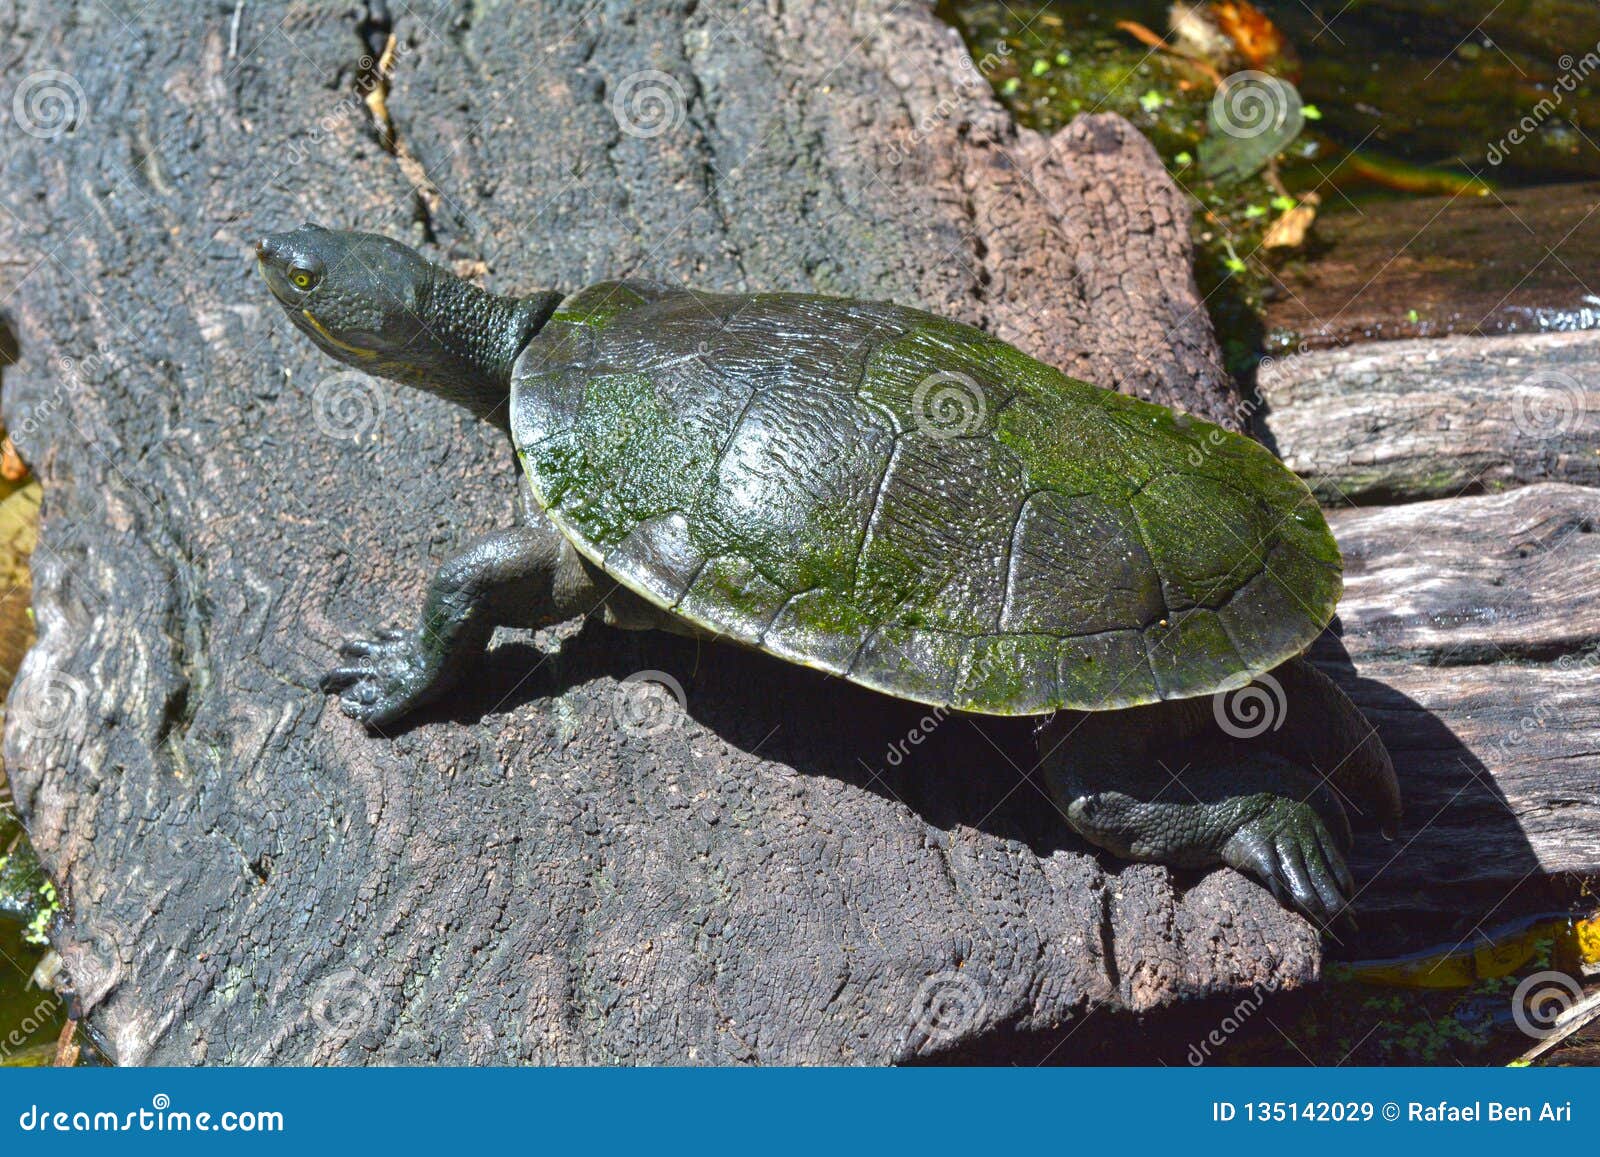 Turtle rise. Freshwater Turtle. Австралийская змеиношеяя черепаха фото.